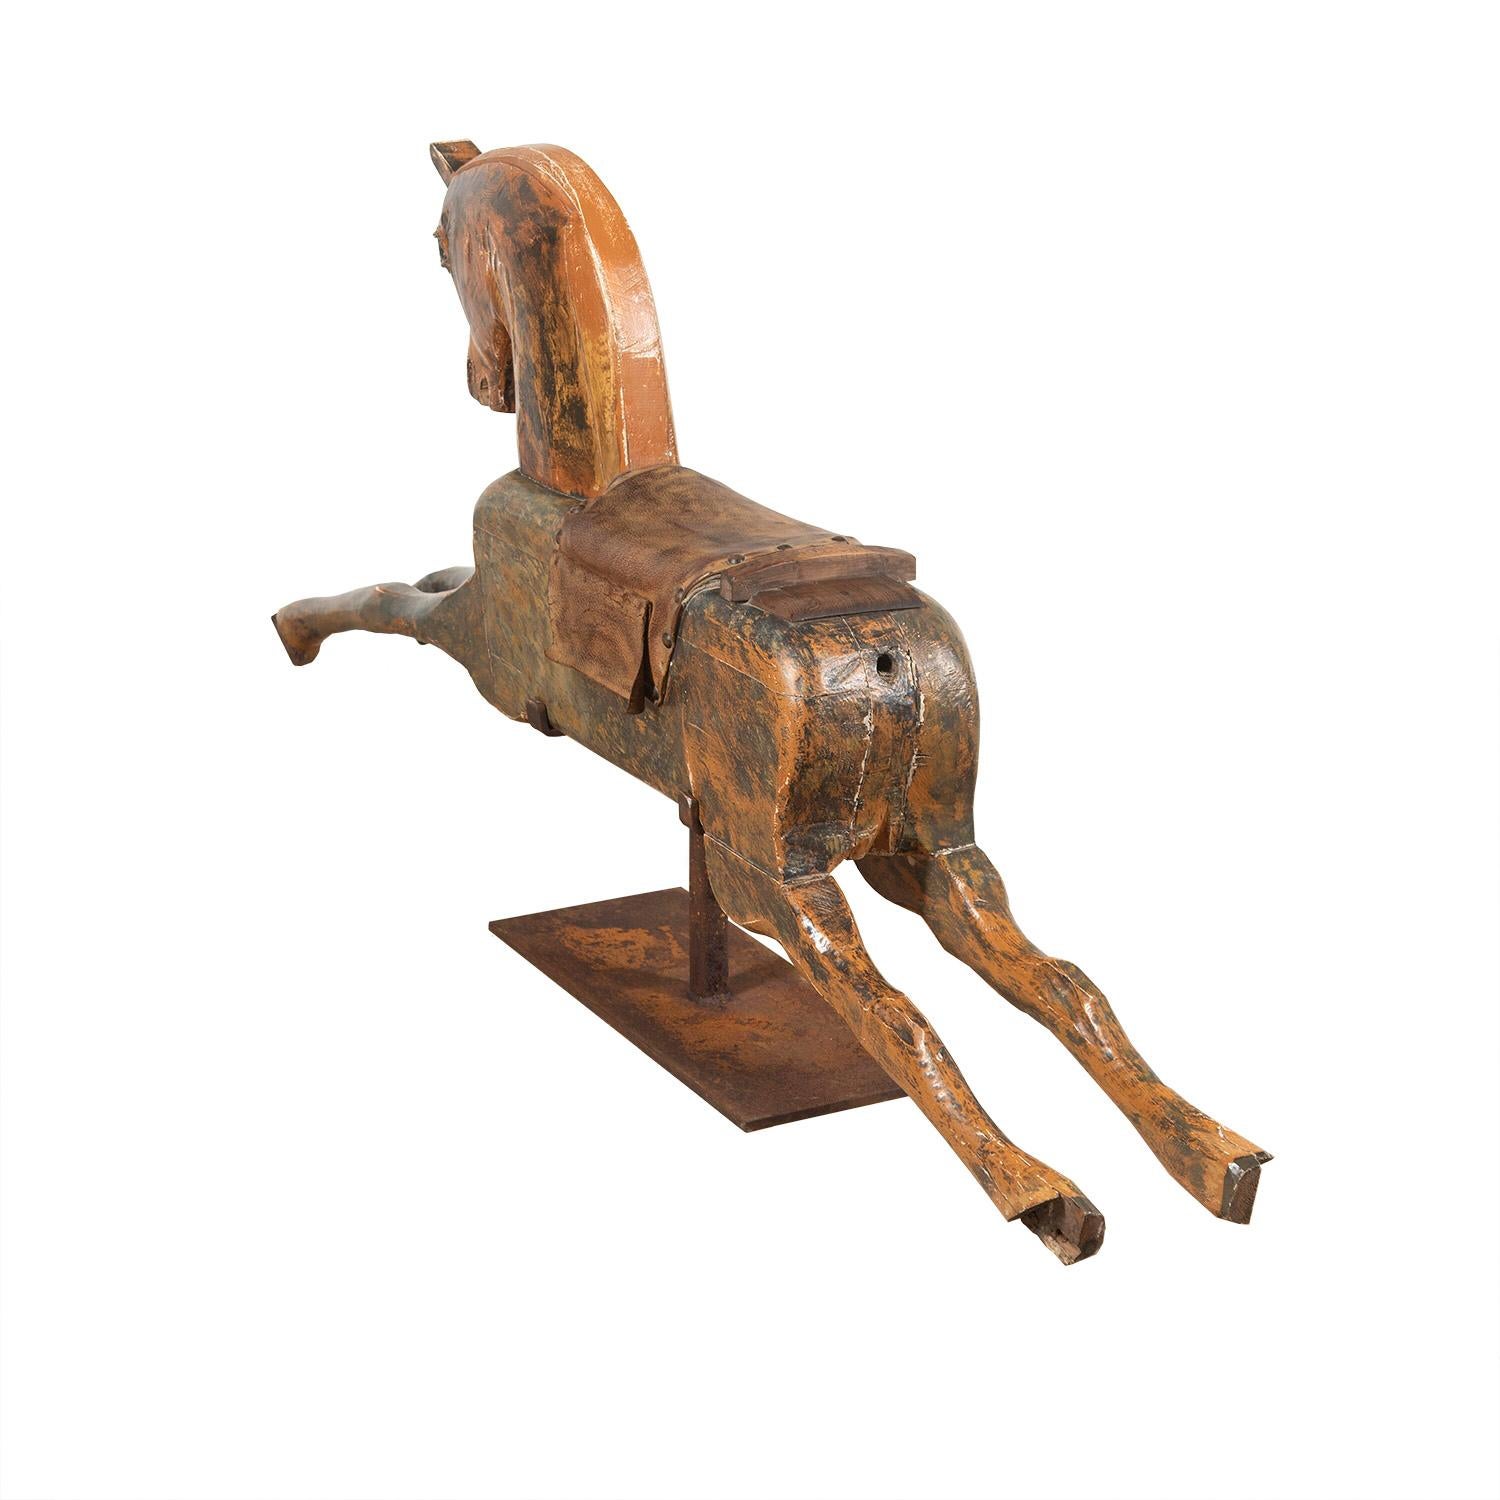 Cheval de carrousel américain décoratif en bois sculpté des années 1920, dans sa peinture d'origine. Repose sur un support fabriqué ultérieurement.